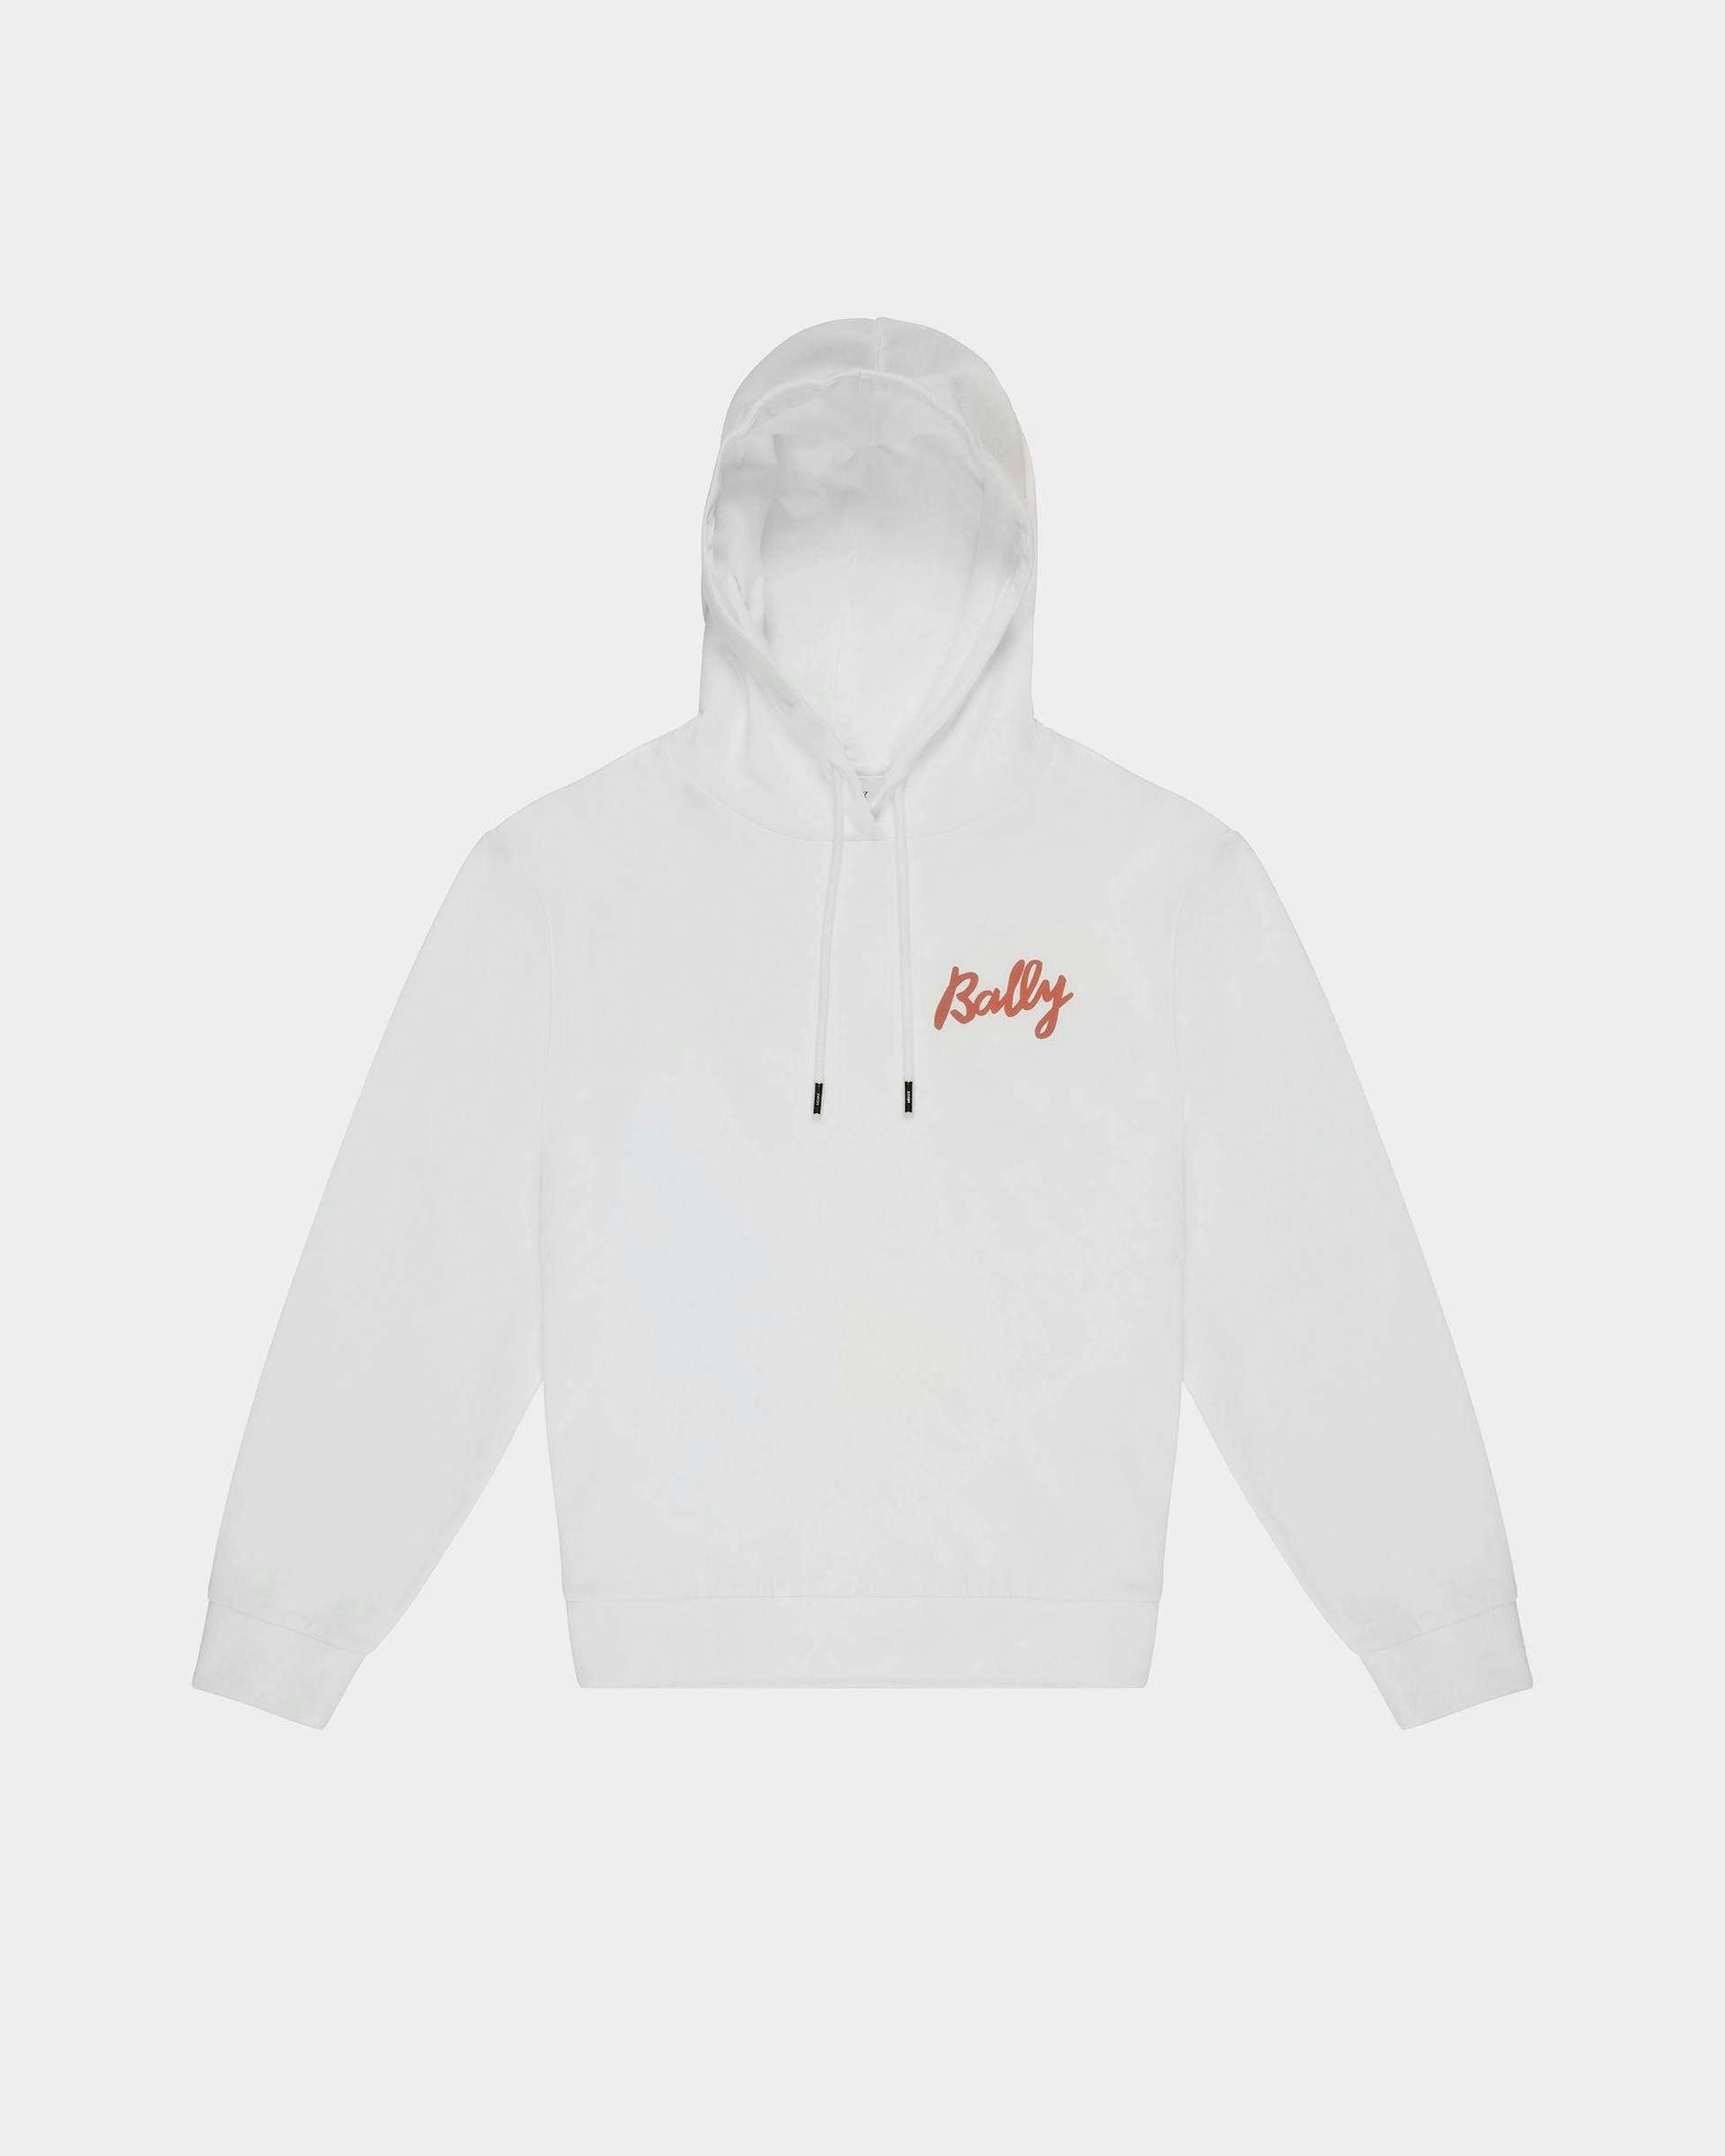 Fleece-Sweatshirt Aus Baumwollmischung In Weiß Und Orange - Damen - Bally - 01